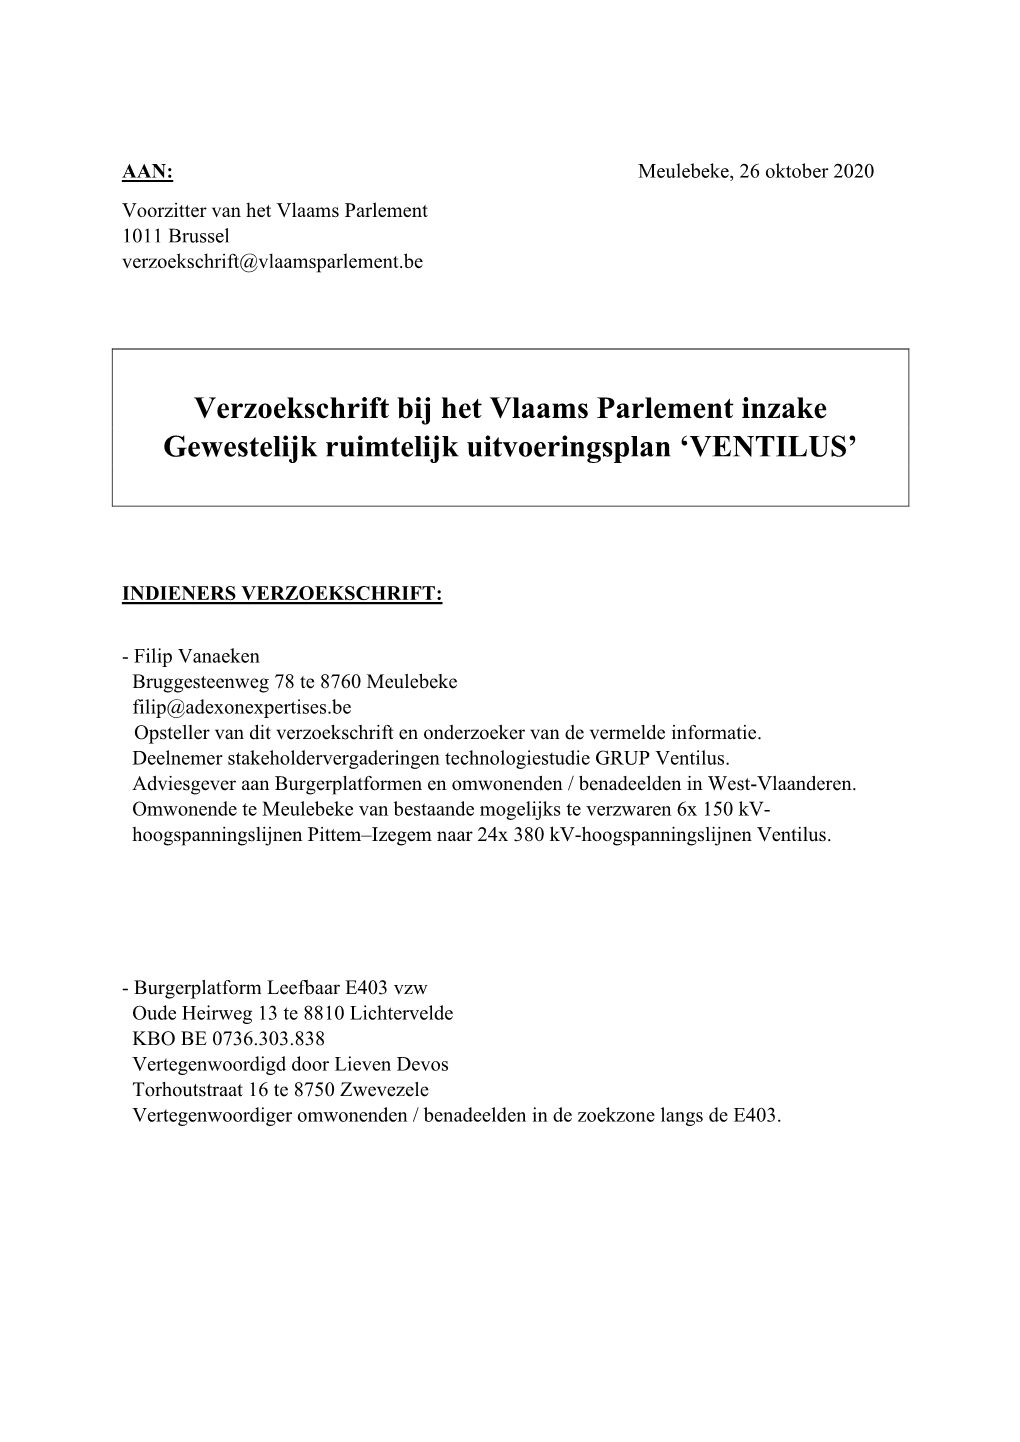 Verzoekschrift Bij Het Vlaams Parlement Inzake Gewestelijk Ruimtelijk Uitvoeringsplan ‘VENTILUS’